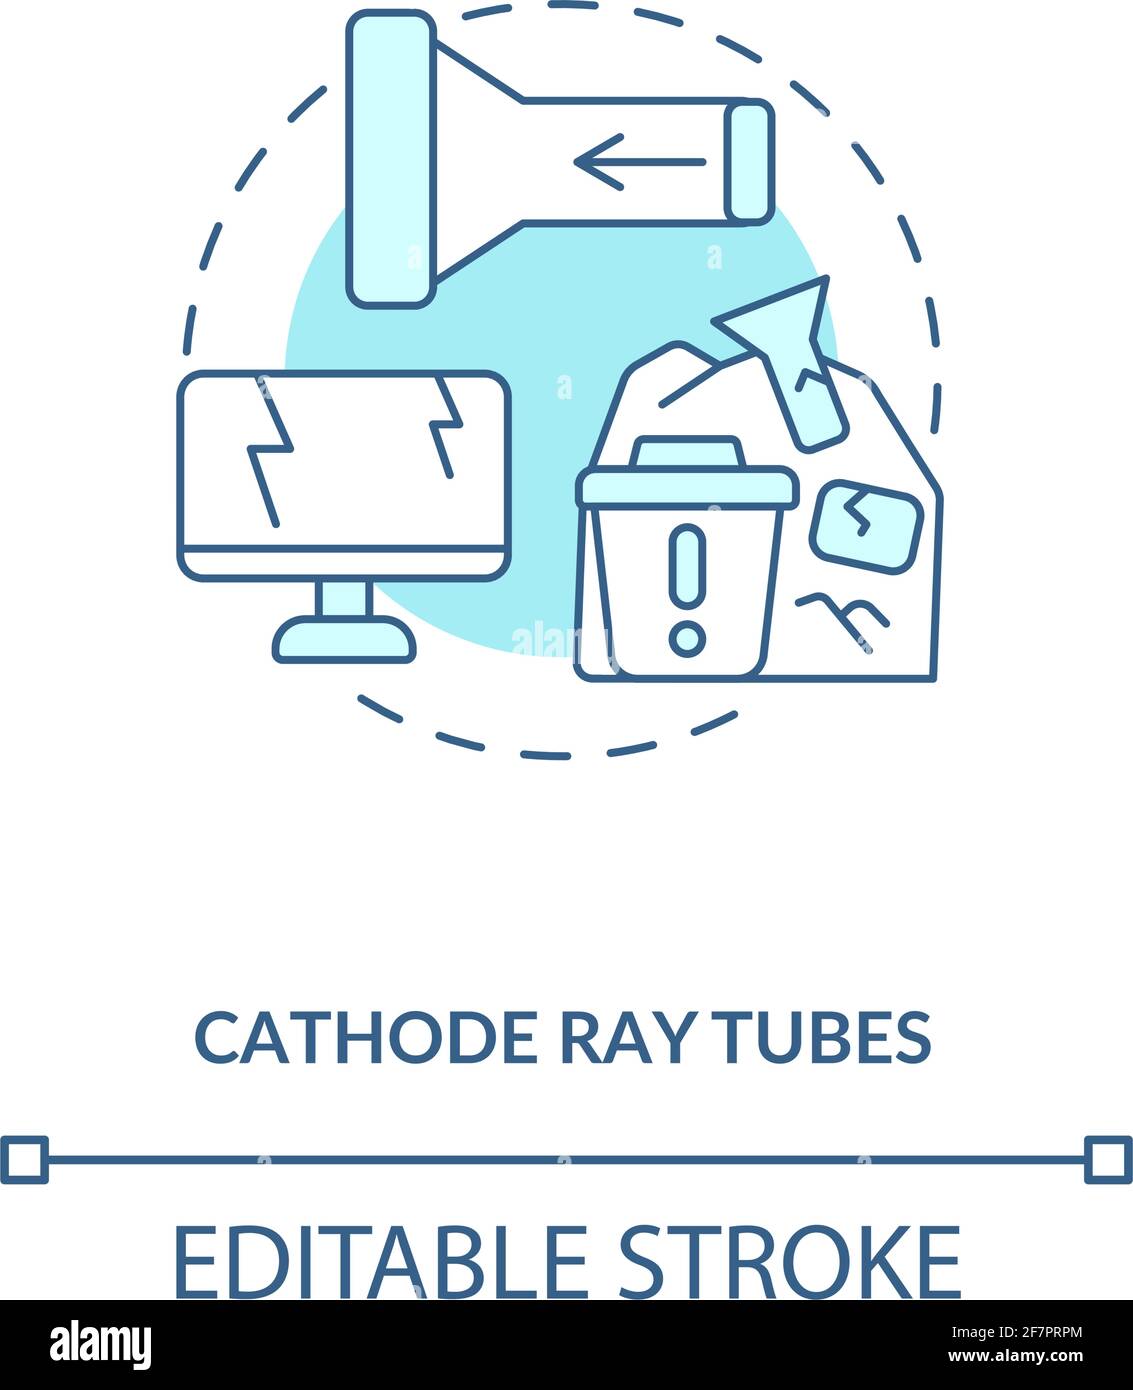 Cathode ray tubes concept icon Stock Vector